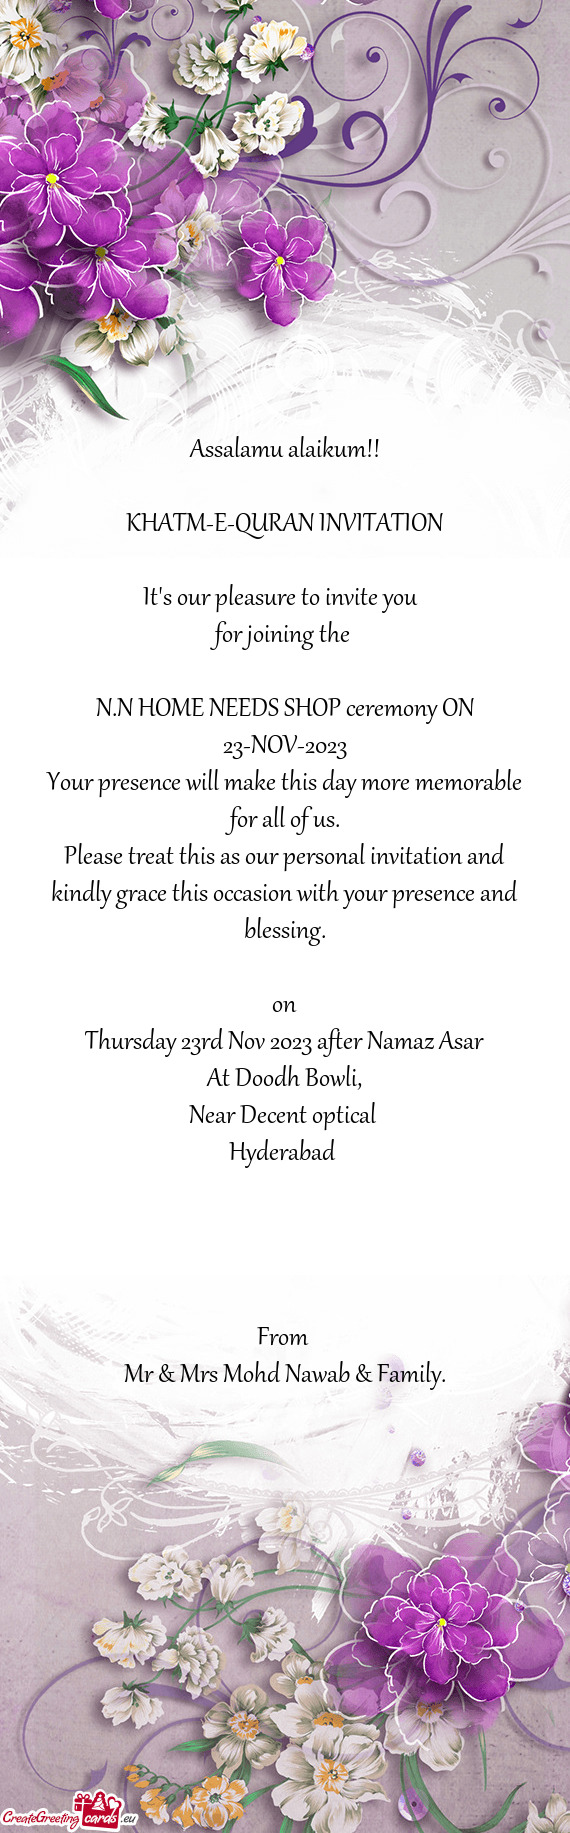 N.N HOME NEEDS SHOP ceremony ON 23-NOV-2023